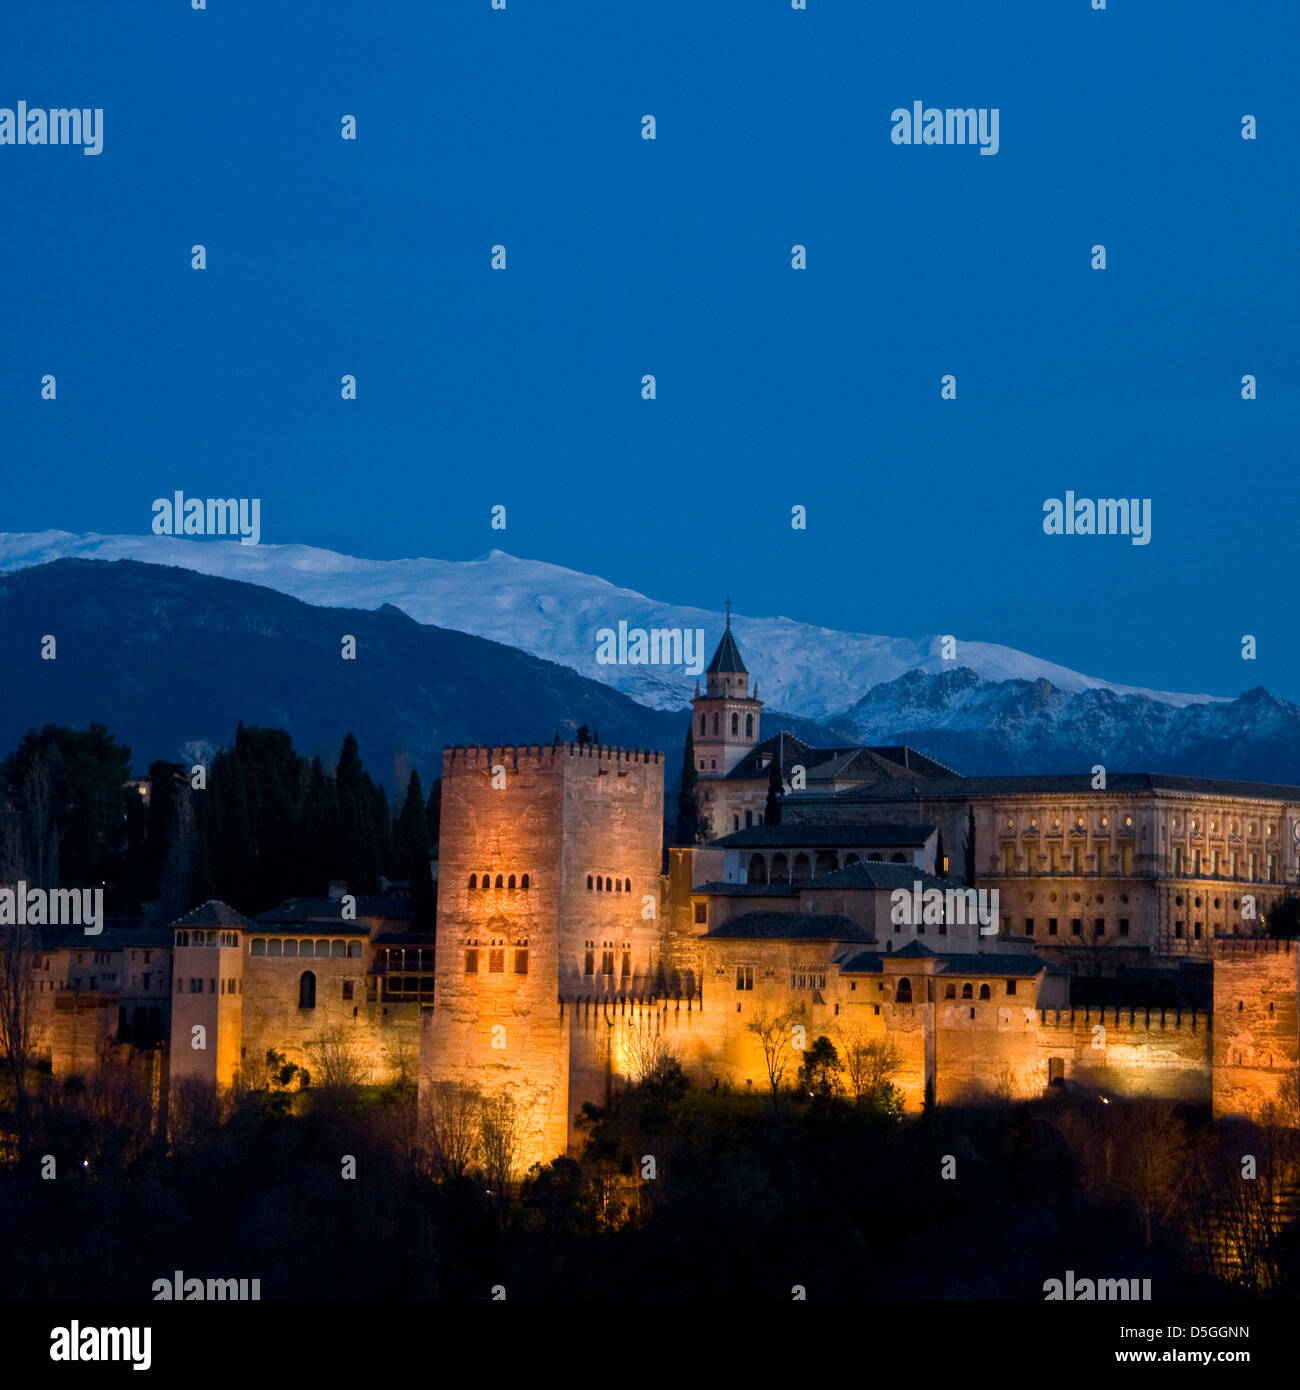 Palais de l'Alhambra UNESCO World Heritage site et panorama des montagnes de la Sierra Nevada Grenade Andalousie au crépuscule crépuscule Espagne Europe Banque D'Images